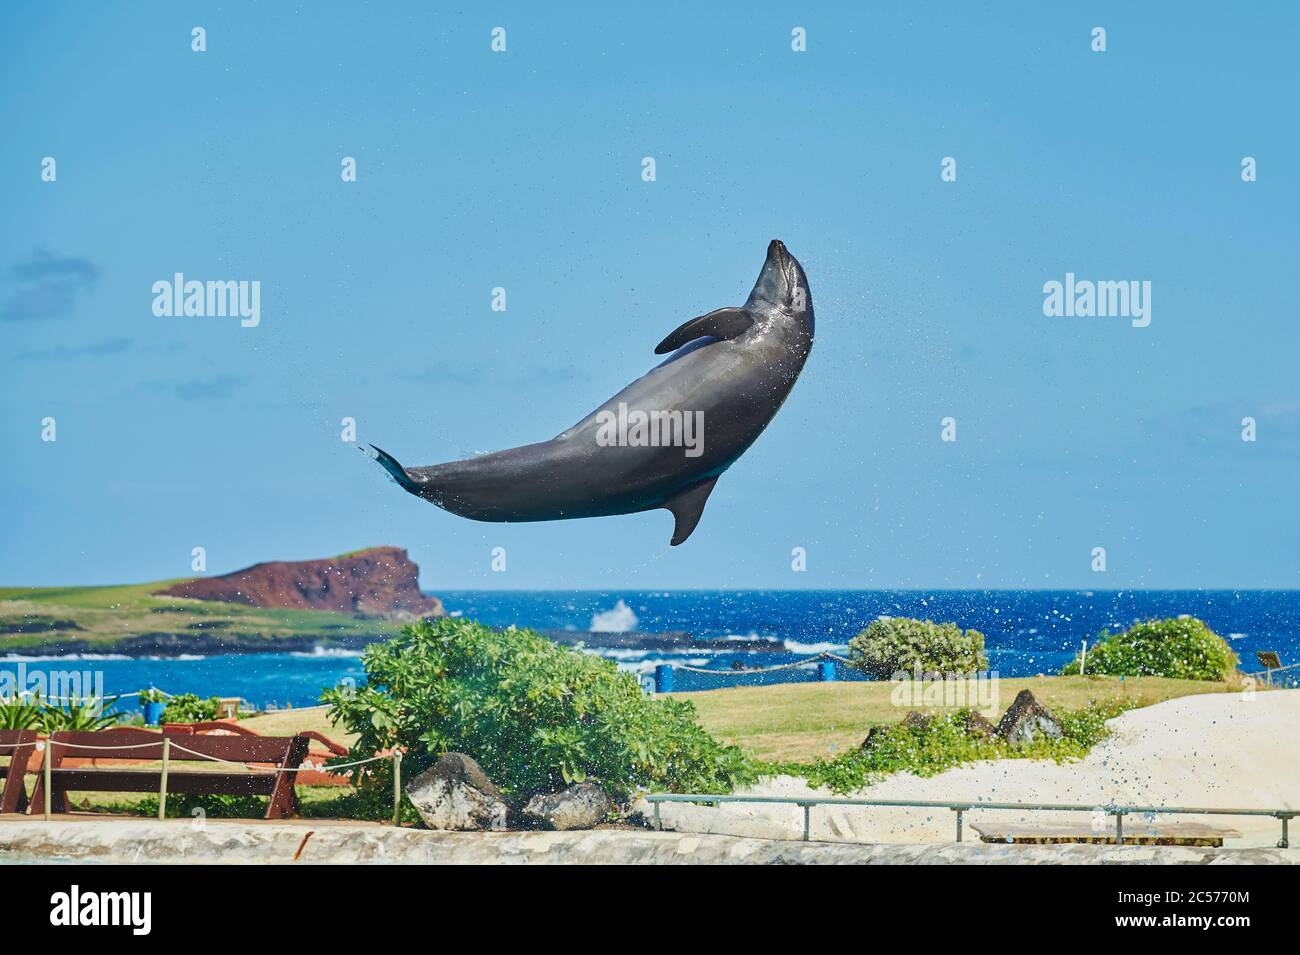 Delfín mular, Tursiops truncatus, saltando de lado, isla hawaiana de Oahu, Hawaii, estado de Aloha, Estados Unidos Foto de stock